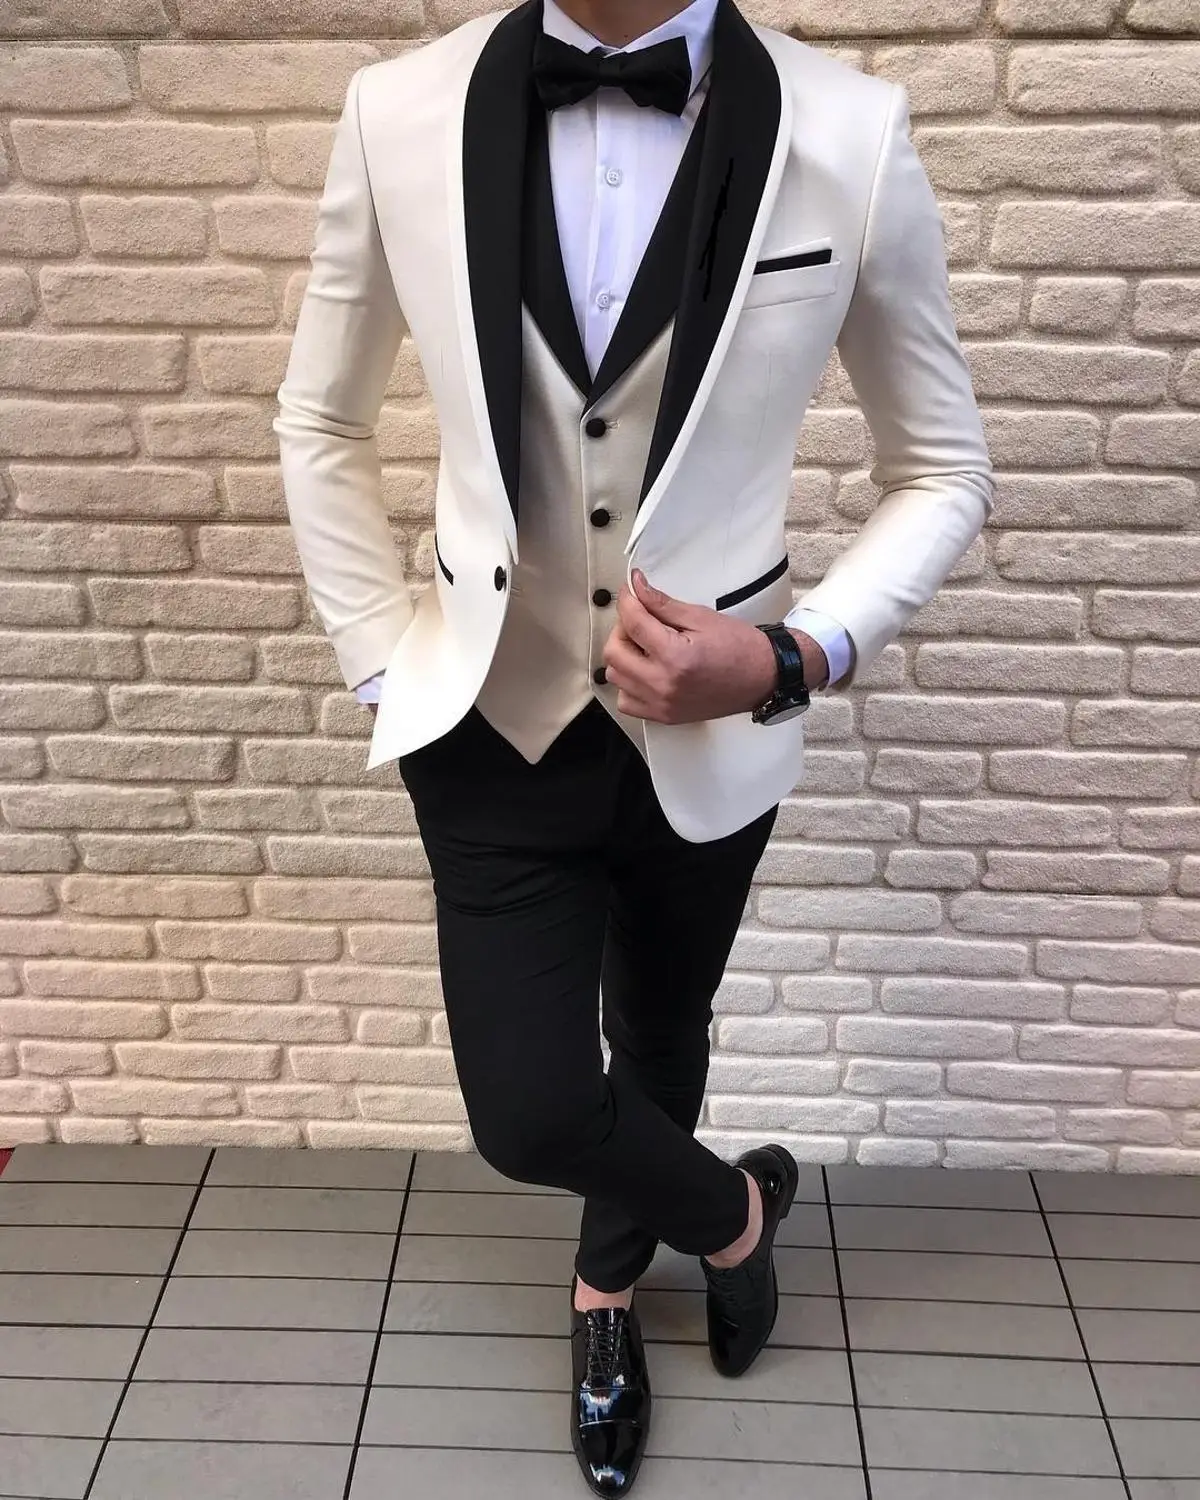 לבן שסף Mens חליפות 3 פיסת הצעיף השחור דש מזדמן החתן חליפות חתונה השושבינים חליפות גברים 2021 (בלייזר+אפוד+מכנסיים)